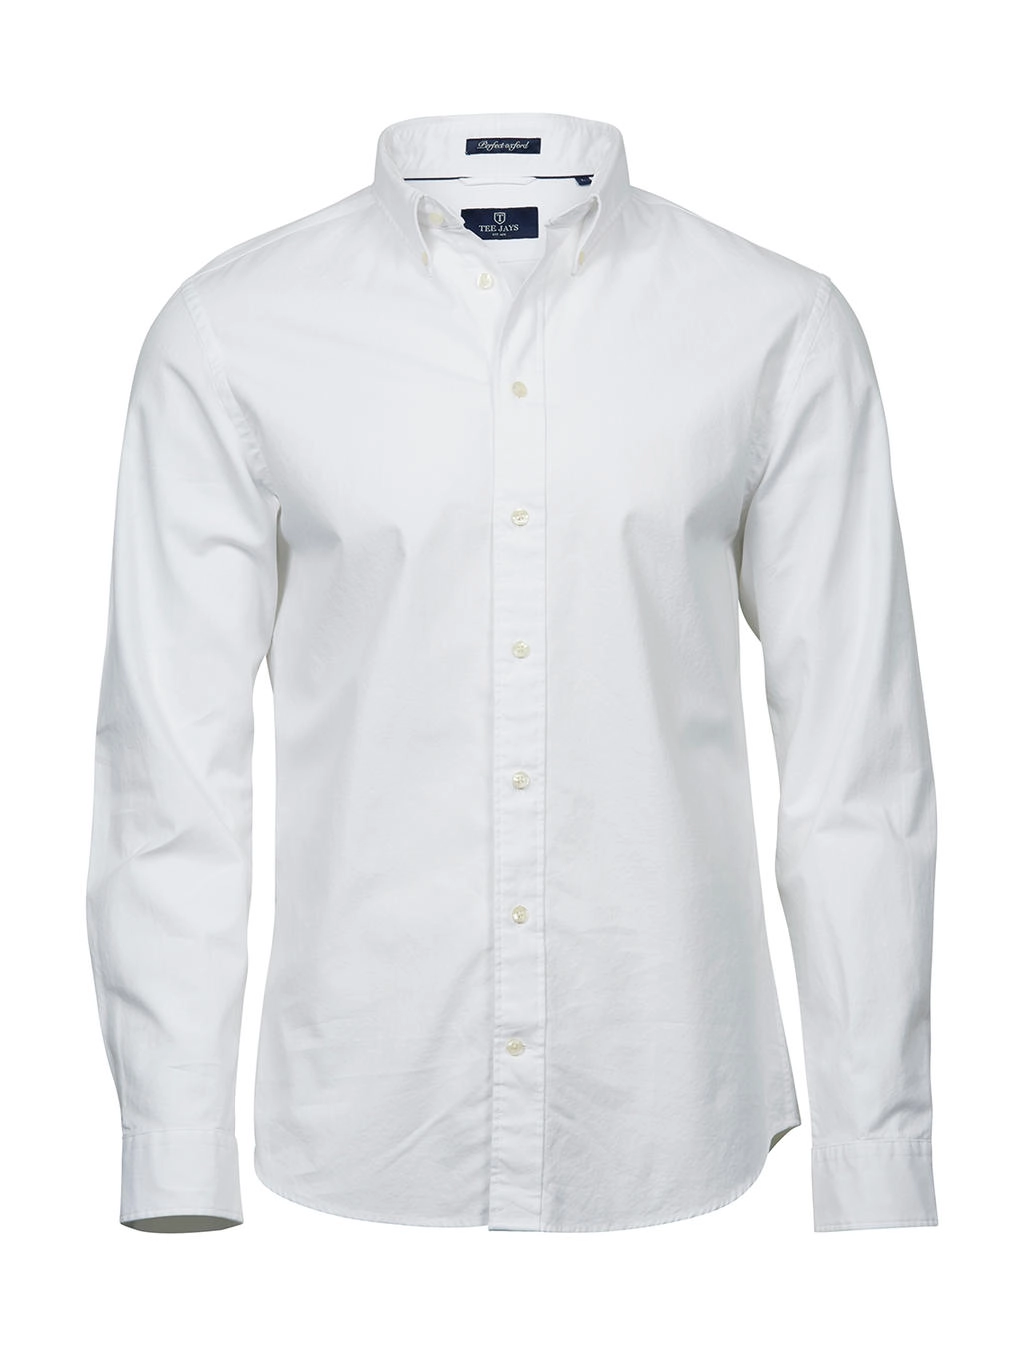 Perfect Oxford Shirt zum Besticken und Bedrucken in der Farbe White mit Ihren Logo, Schriftzug oder Motiv.